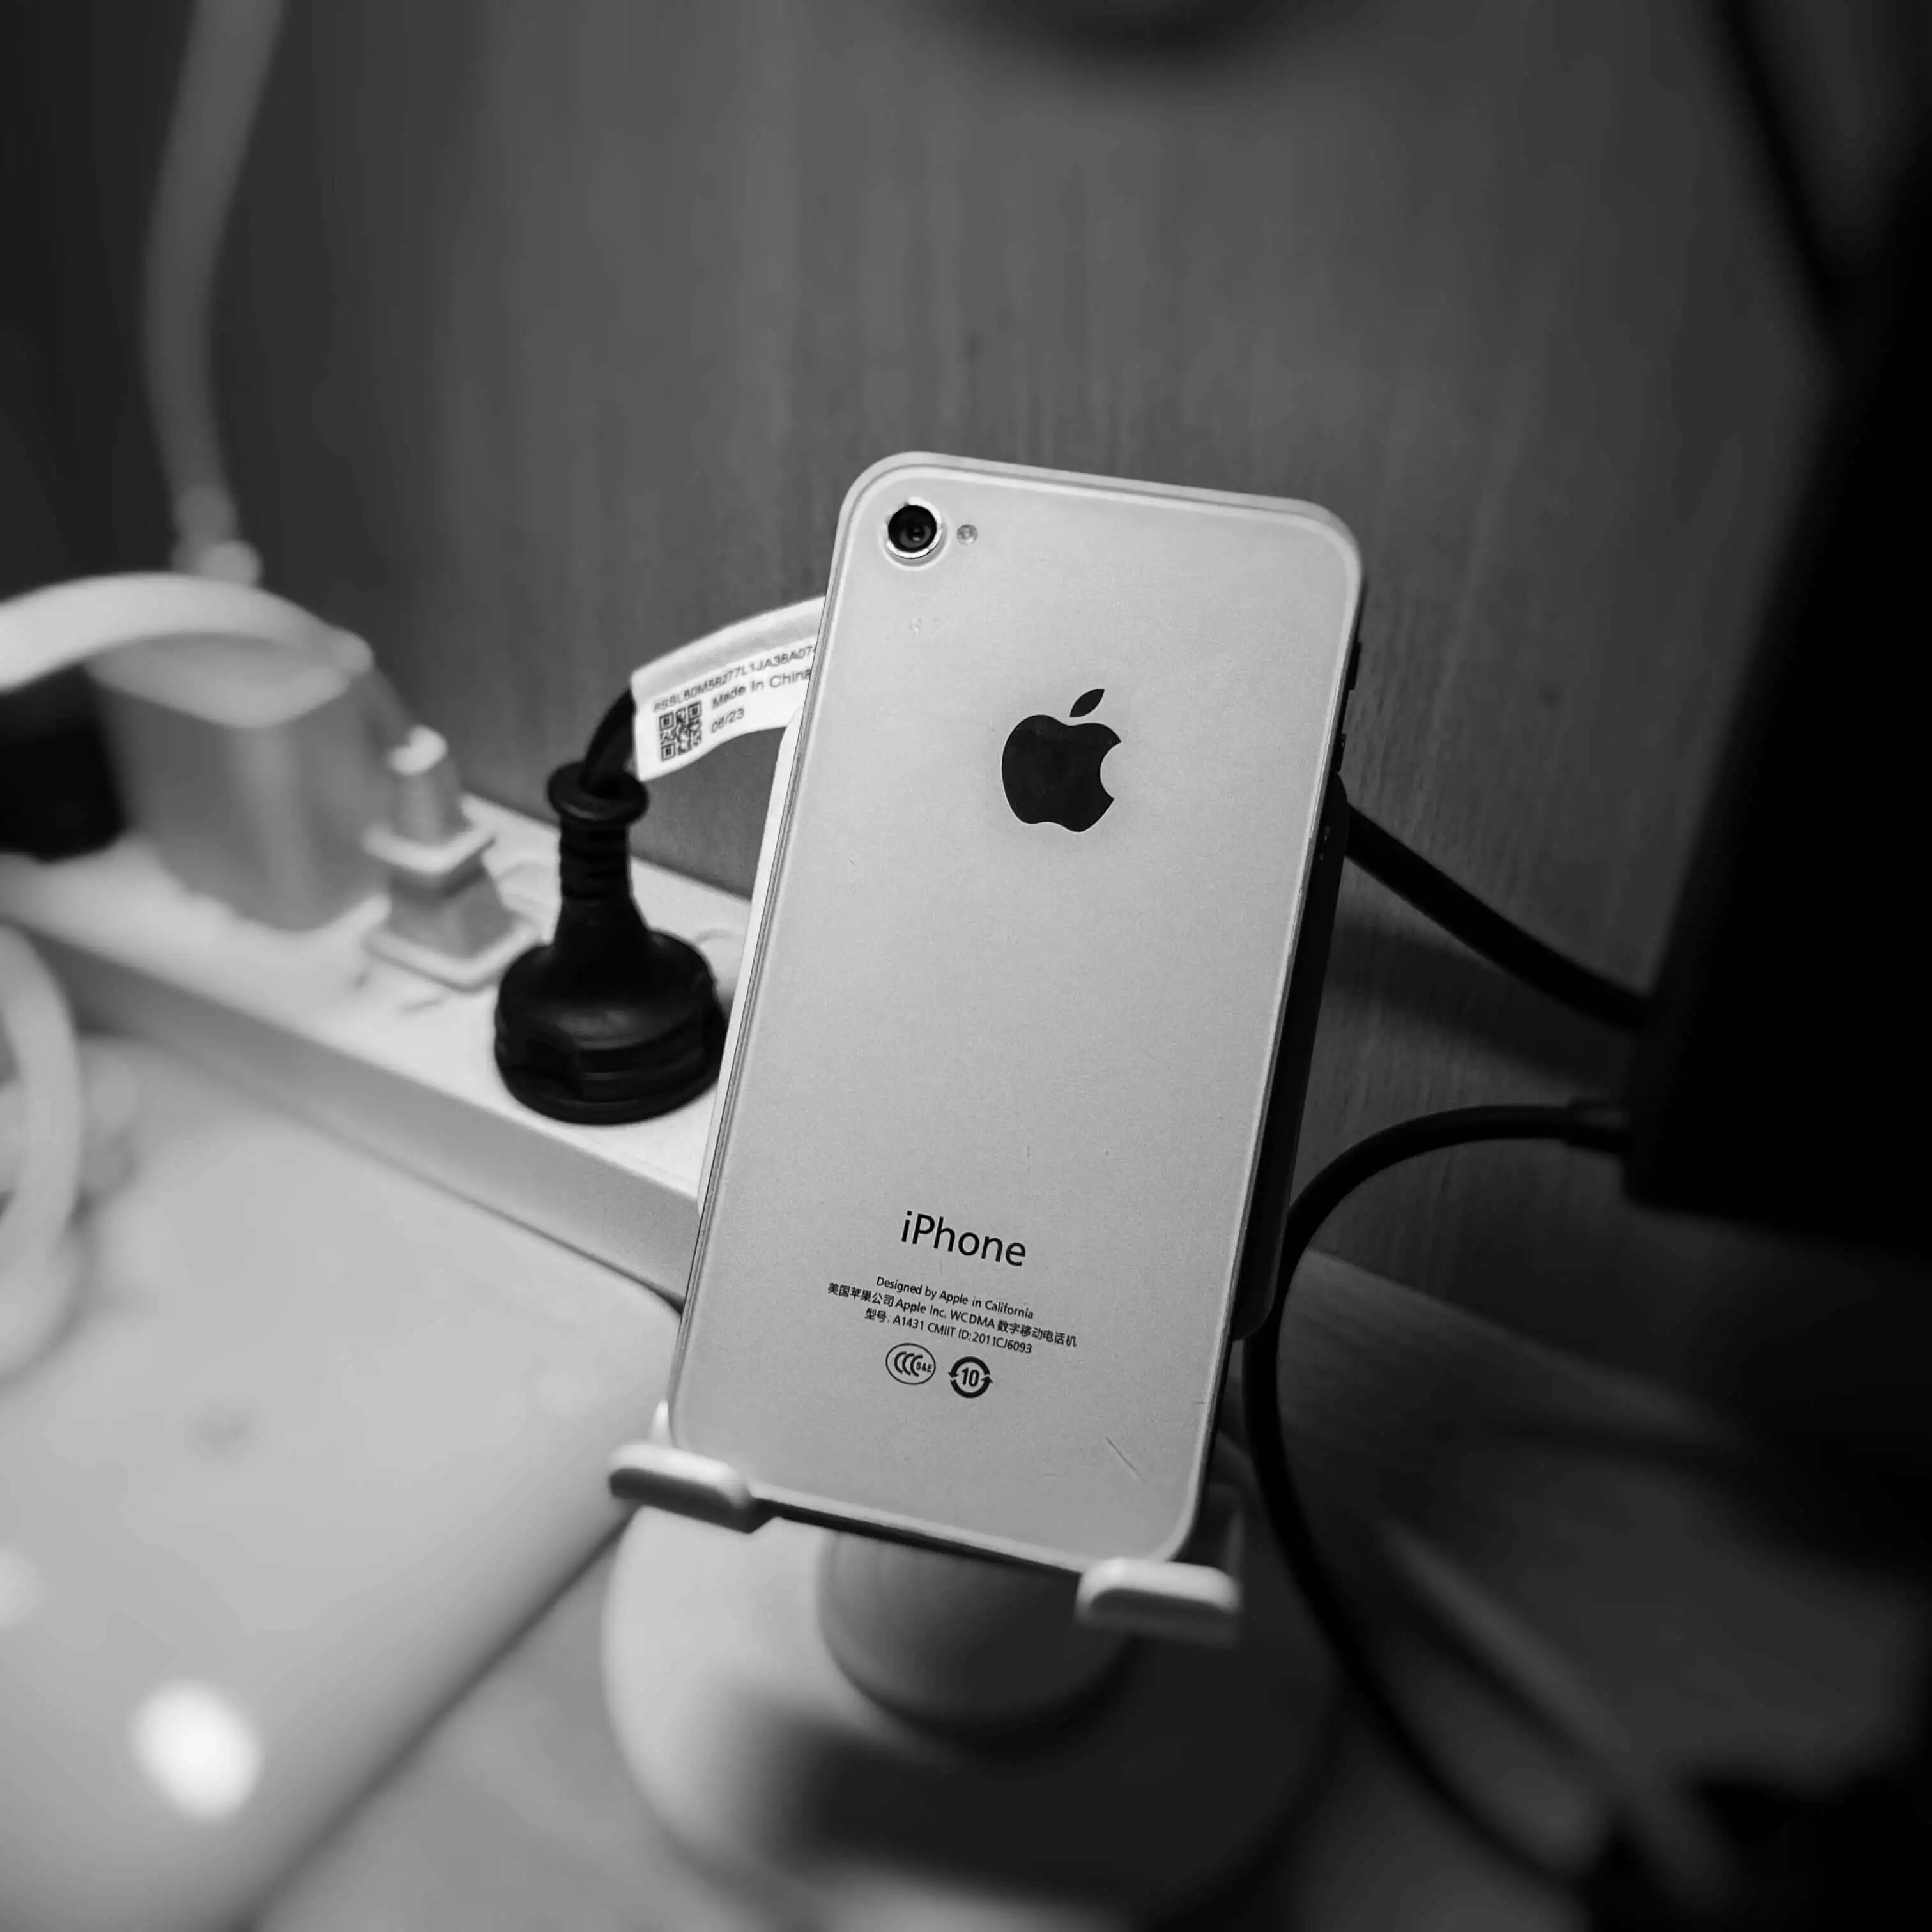 宿舍桌上的iPhone 4s背面